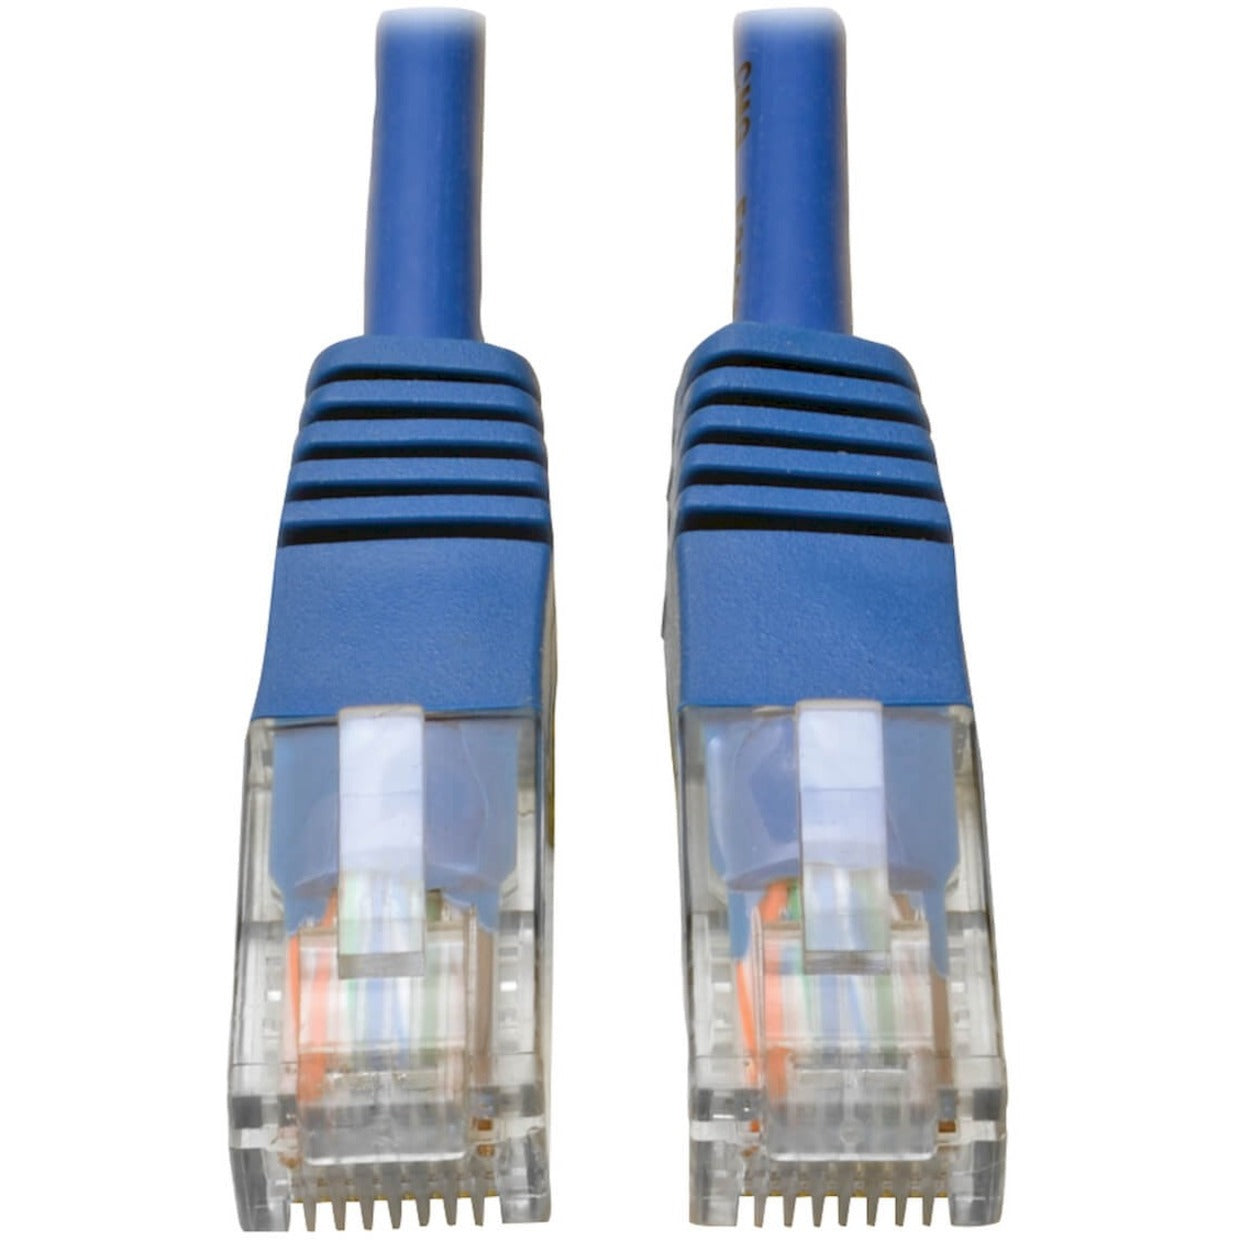 Tripp Lite N002-030-BL 30-ft. Cat5e 350MHz Molded Cable (RJ45 M/M) - Blue, Lifetime Warranty, RoHS Certified